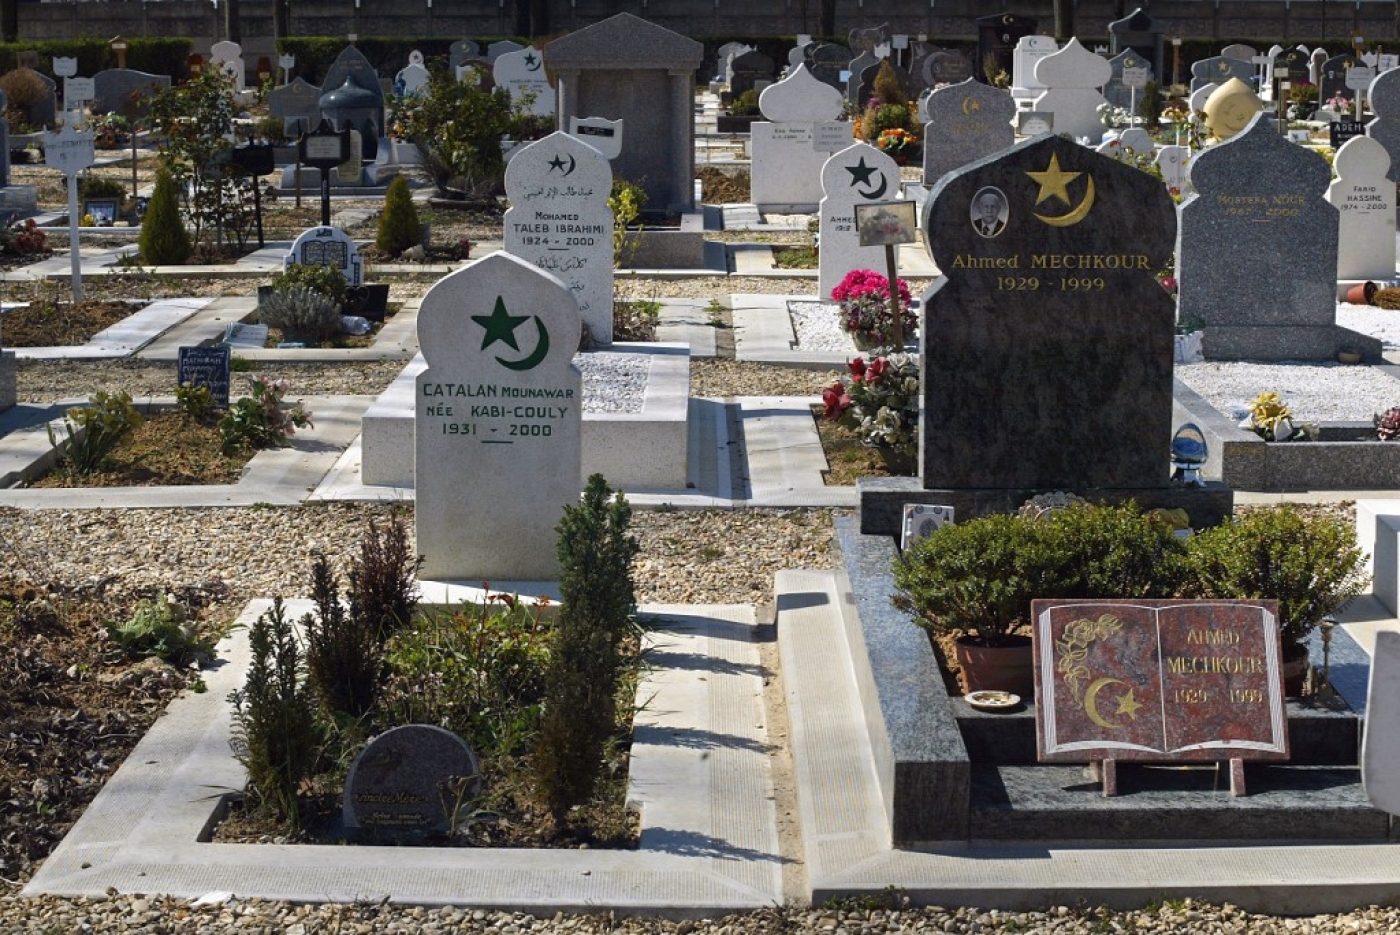  À Thiais, un des rares cimetières à disposer de carrés musulmans où les défunts peuvent être inhumés la tête en direction de la Mecque (AFP/Joel Robine)